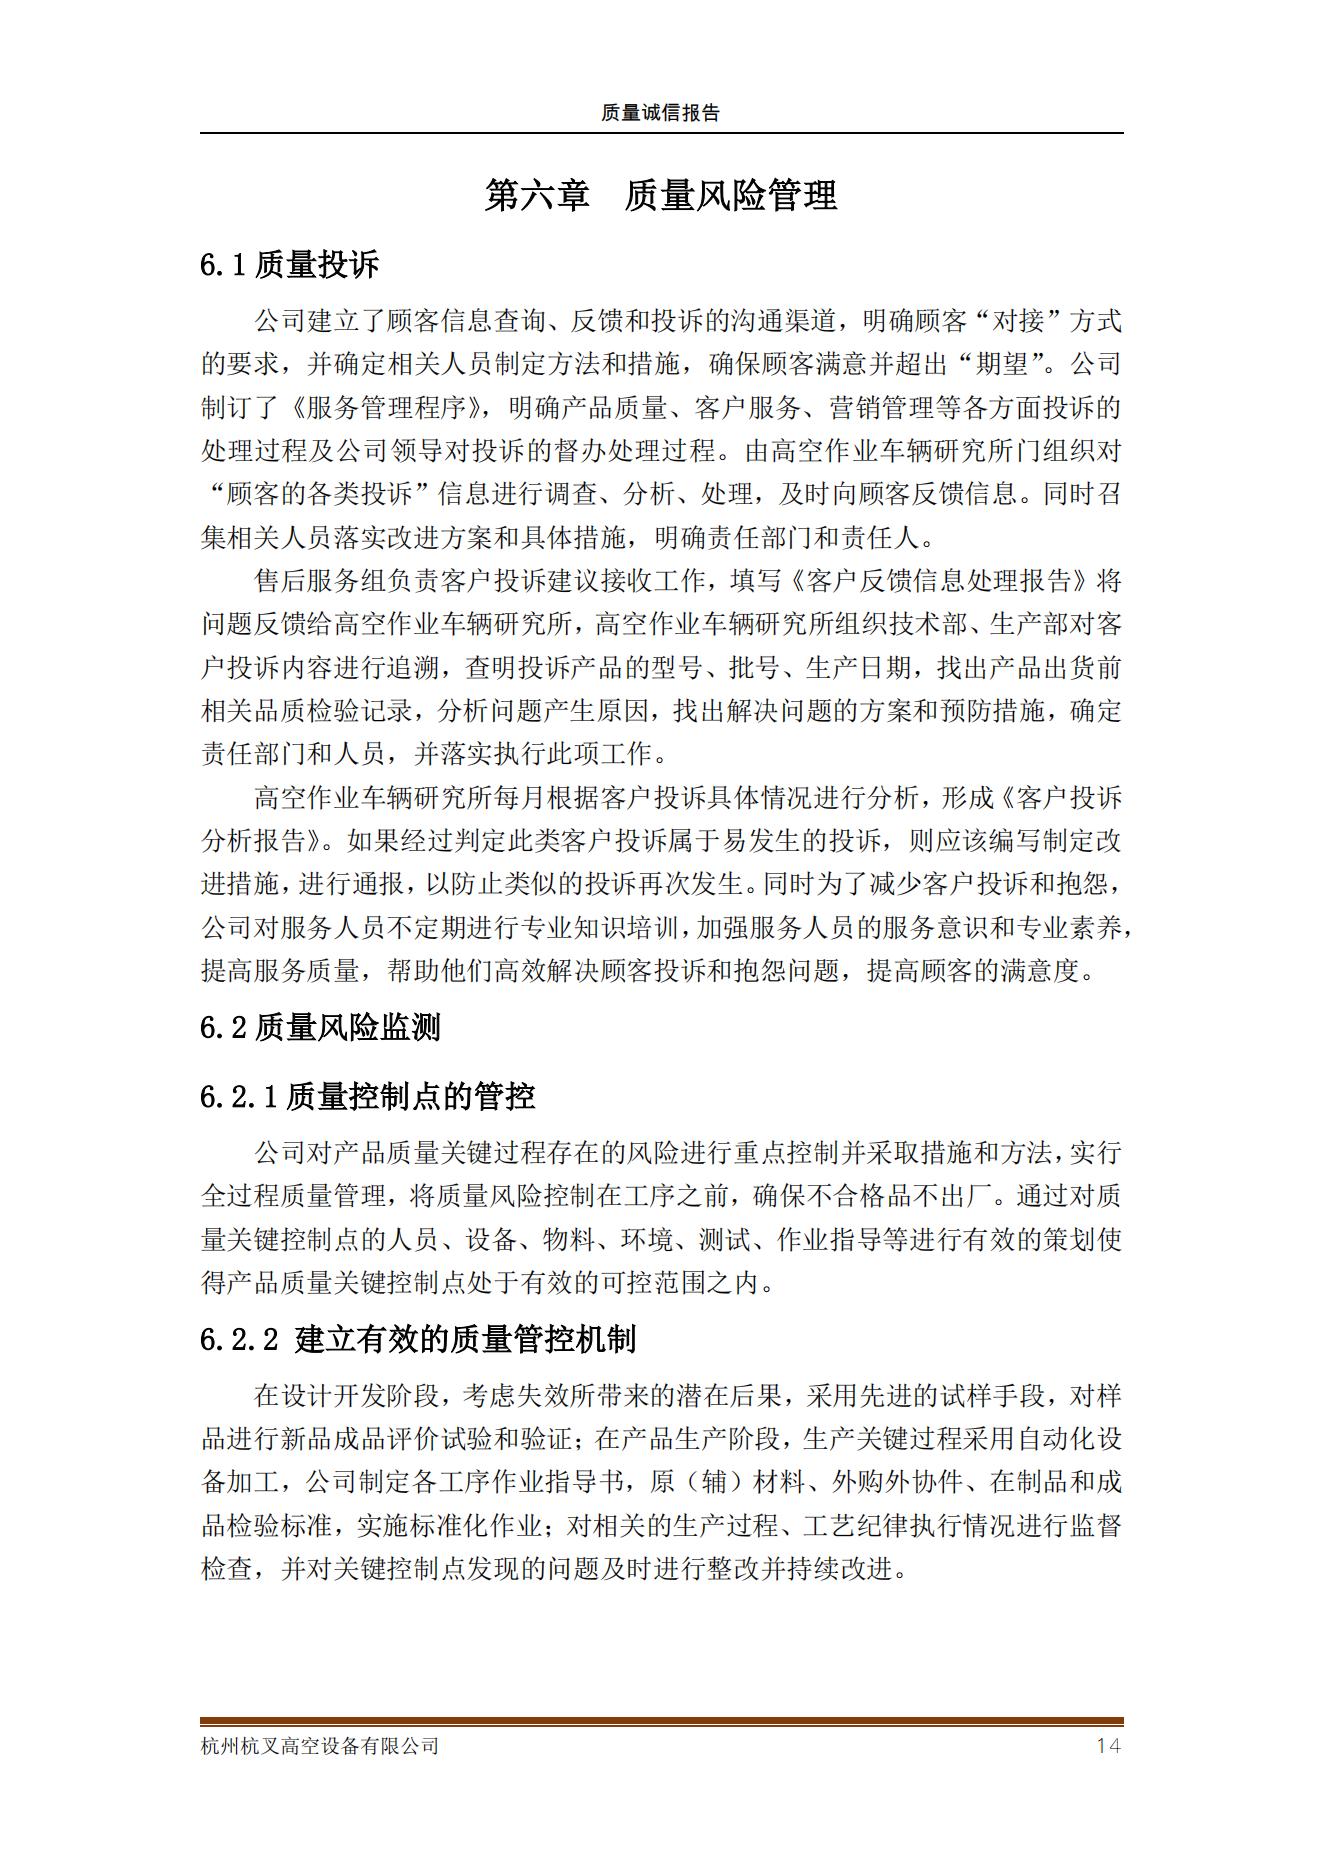 杭州杭叉高空設備公司2021年質量誠信報告(圖14)